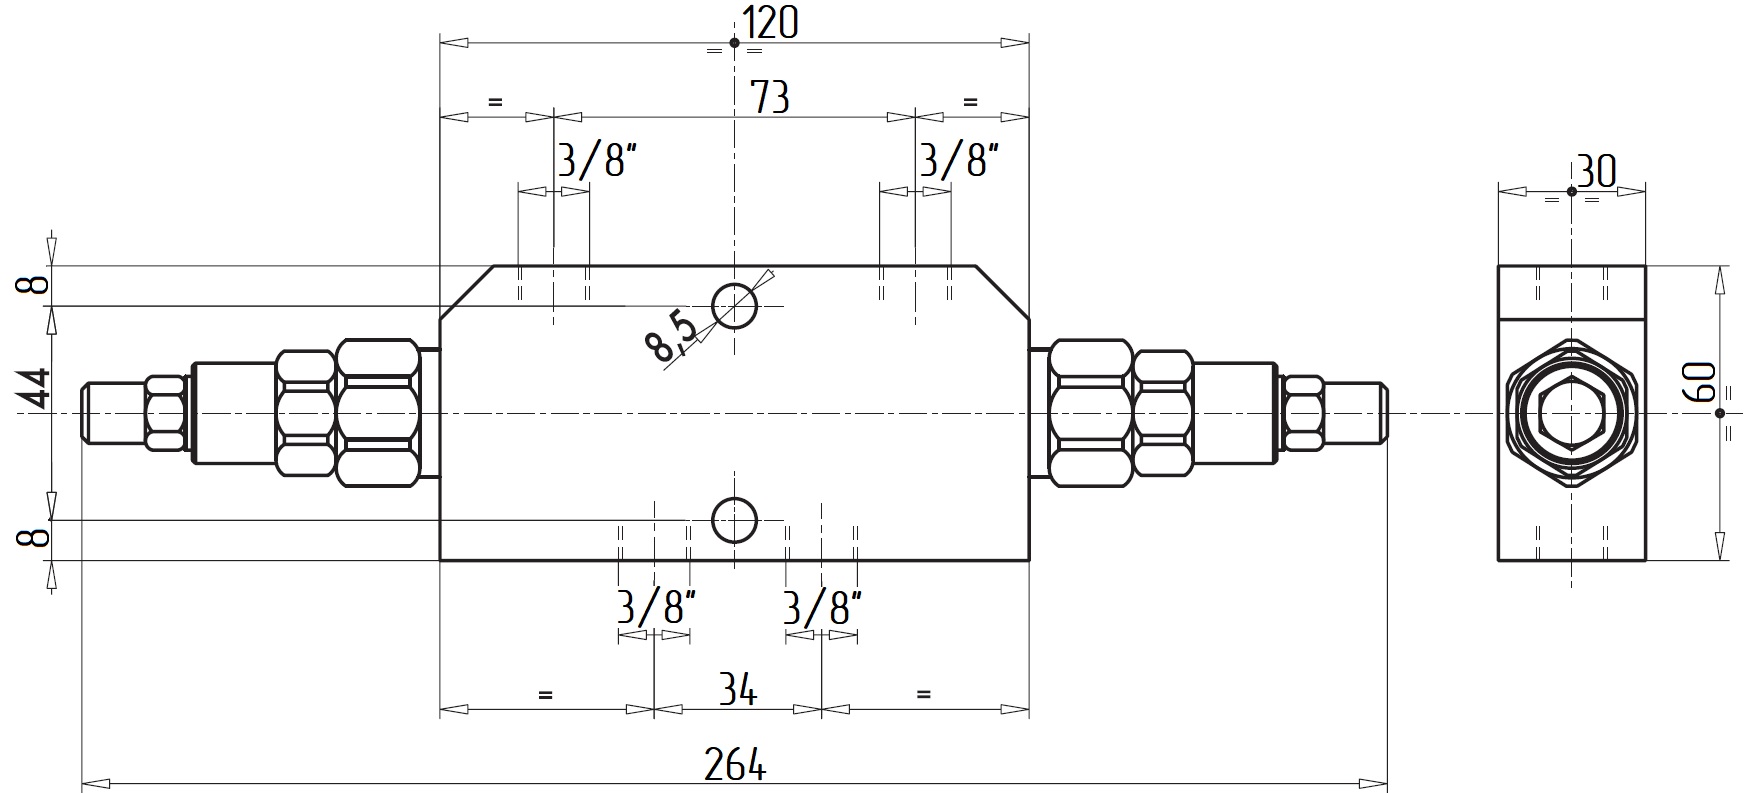 Габаритные размеры V0420-VBCD 3/8 DE Подпорно-тормозной клапан двусторонний